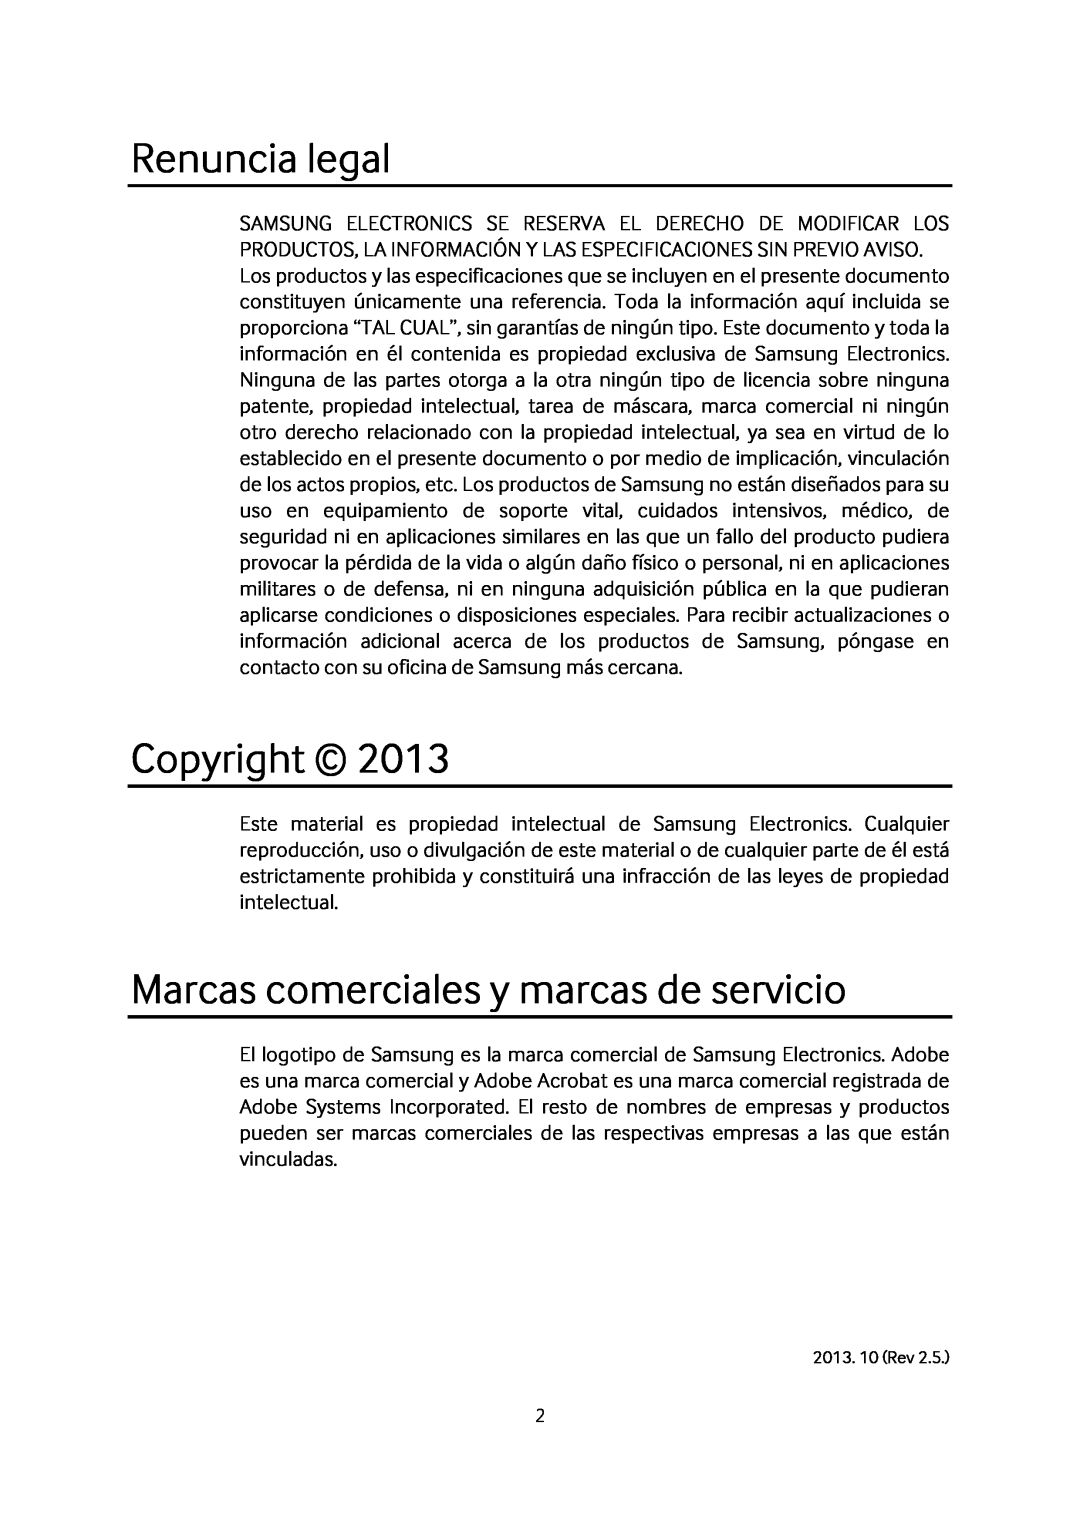 Samsung MZ-7TD120KW, MZ-7TD500BW, MZ-7TD250KW manual Renuncia legal, Copyright, Marcas comerciales y marcas de servicio 